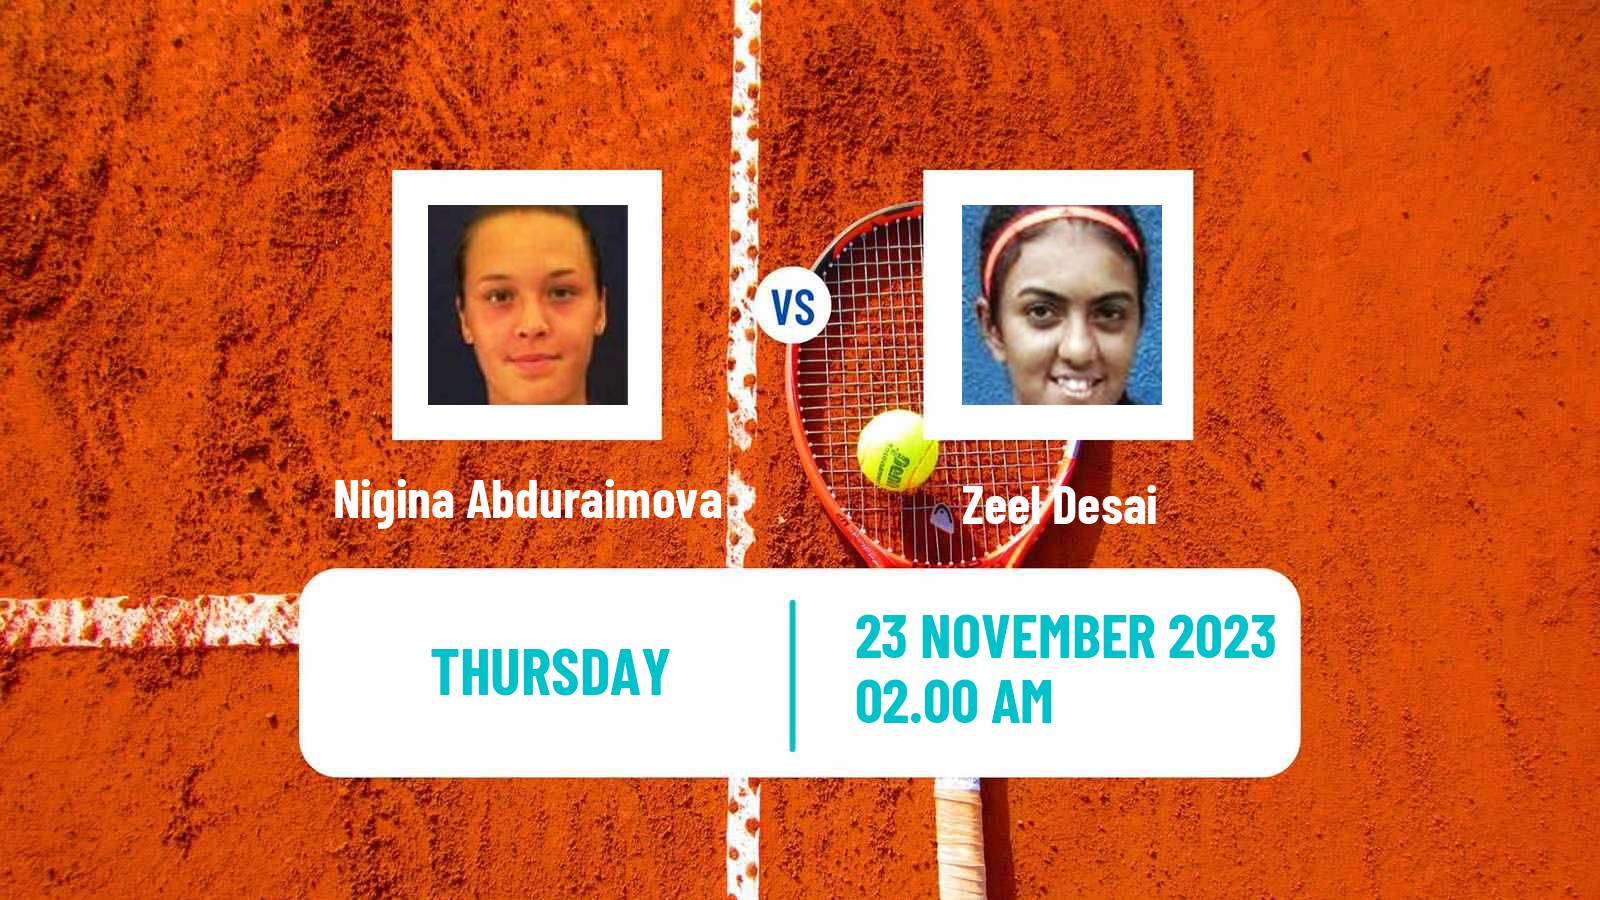 Tennis ITF W25 Bengaluru 2 Women Nigina Abduraimova - Zeel Desai